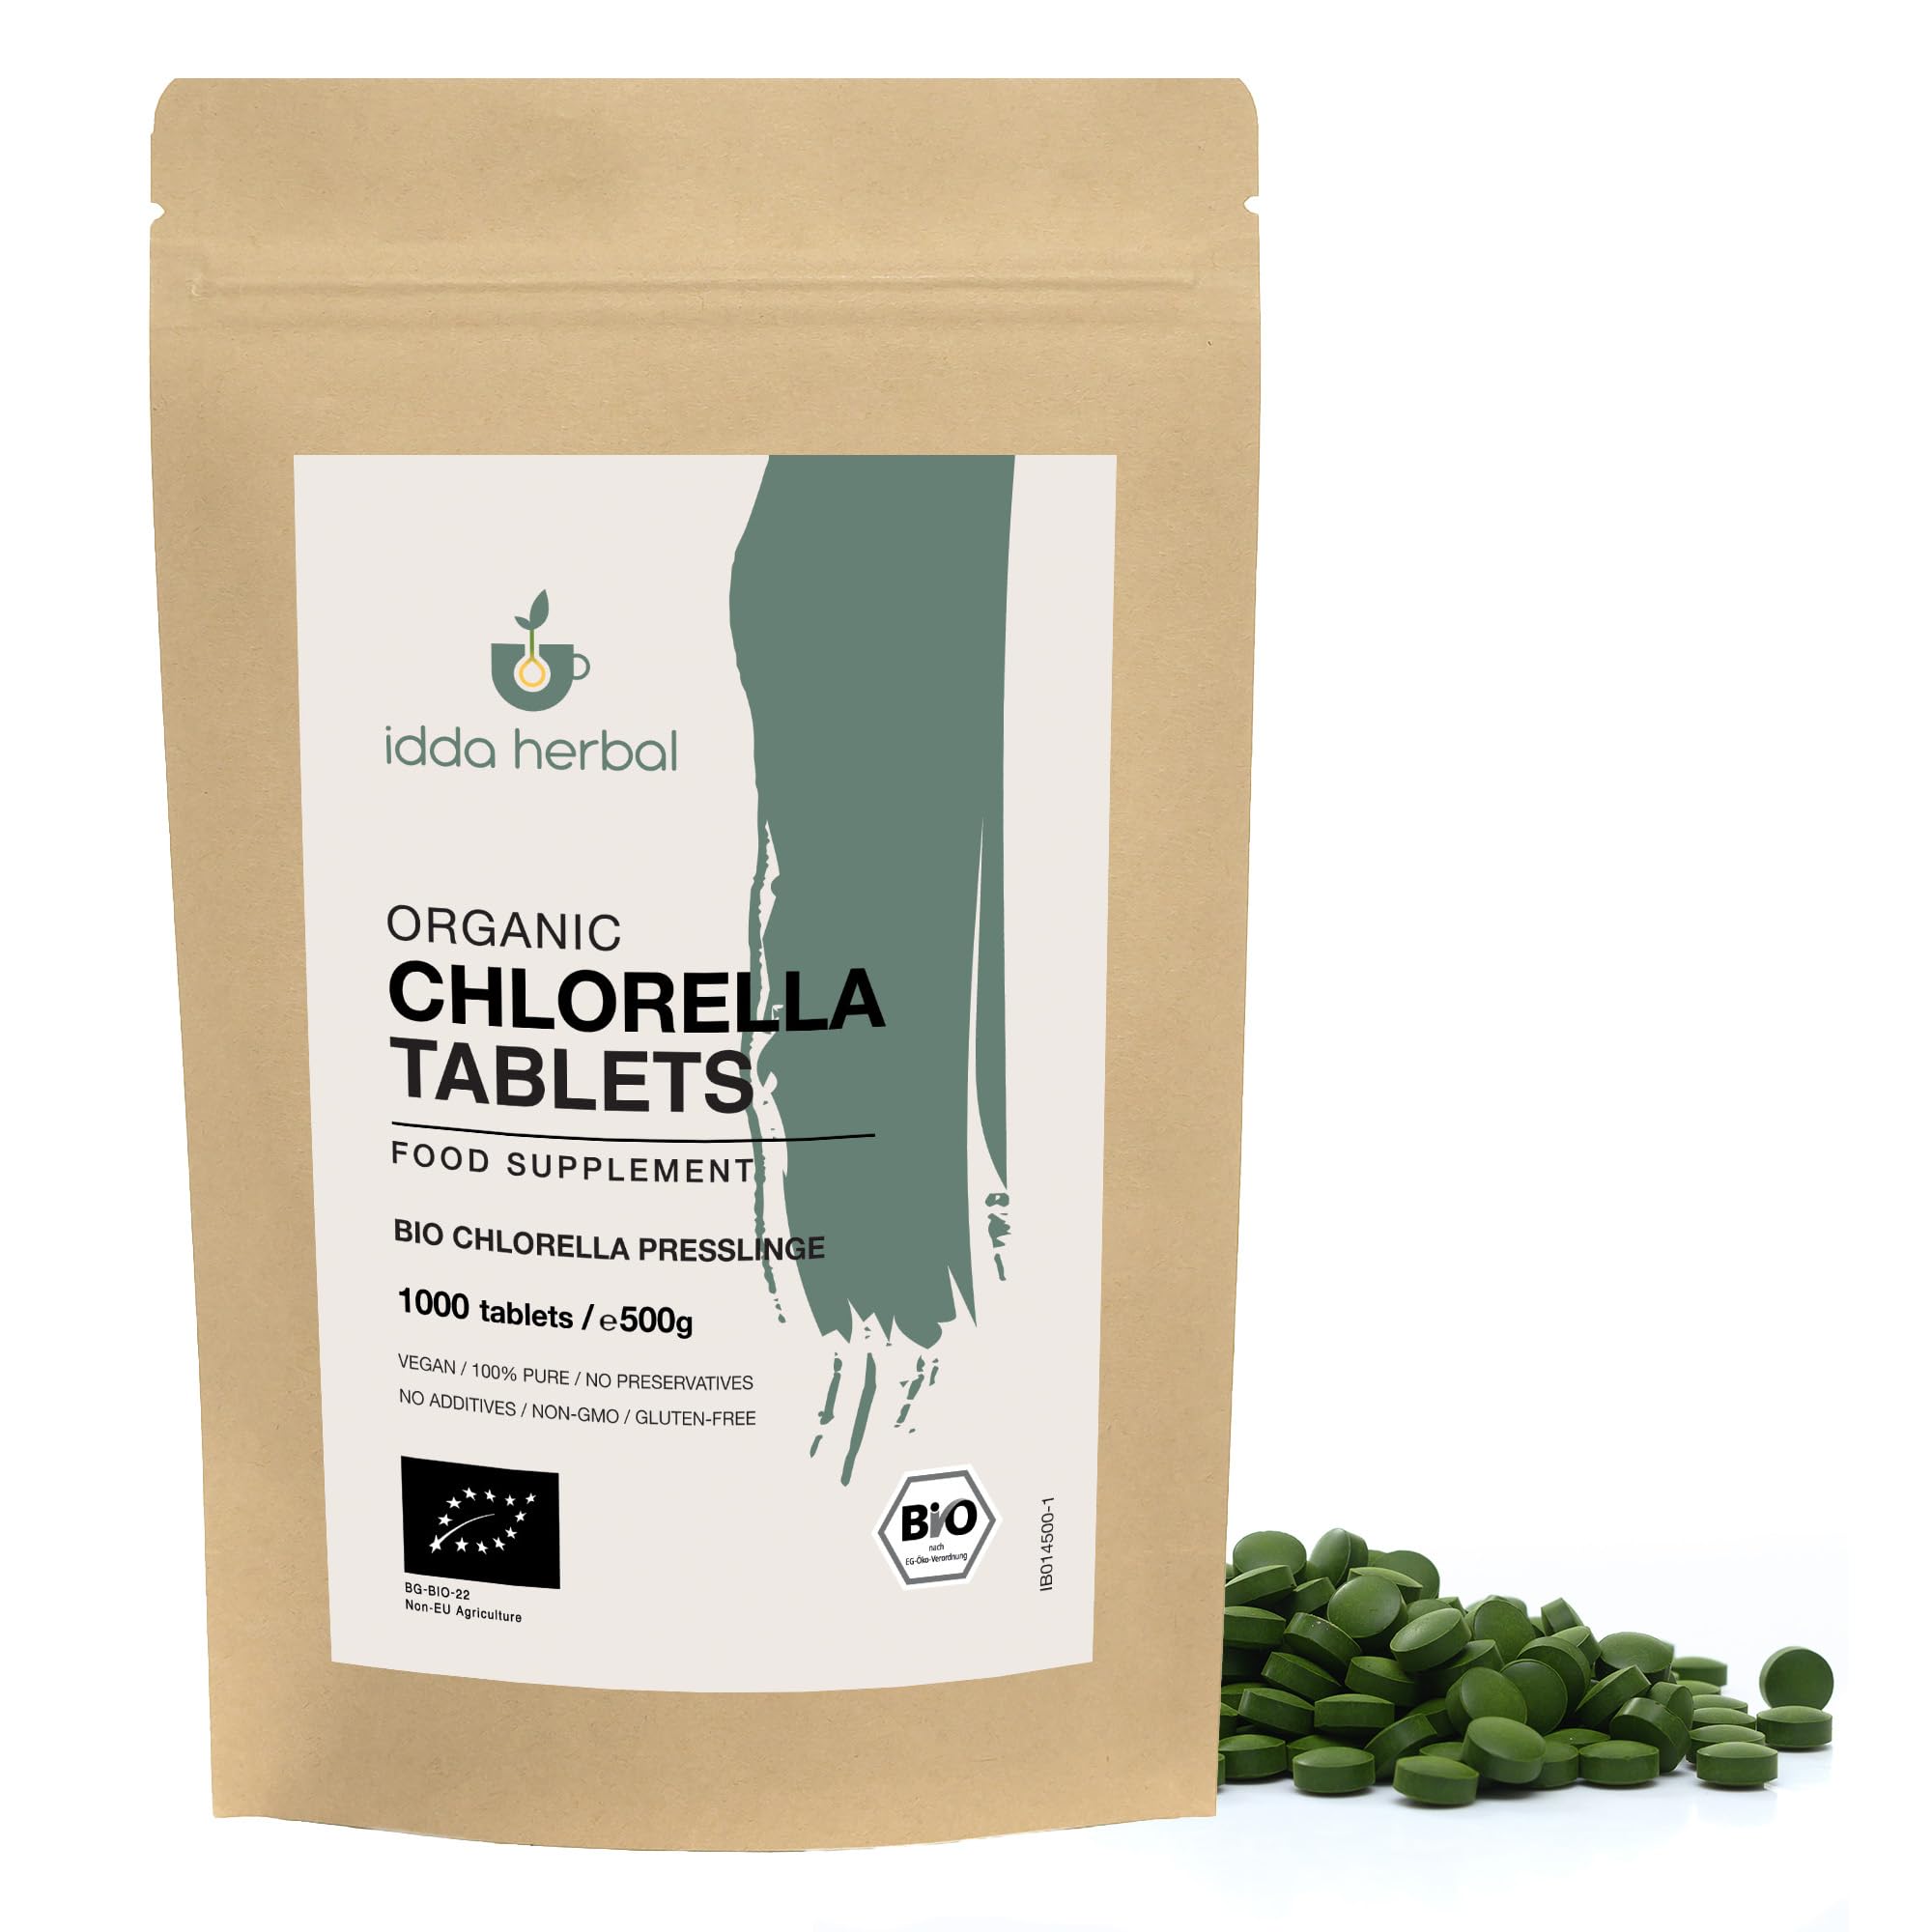 BIO Chlorella Presslinge 500mg, 1000 Tabletten (500g), Chlorella Alge, Mikroalge Chlorella Vulgaris aus biologischem Anbau, 100% Natürlich und rein, Vegan